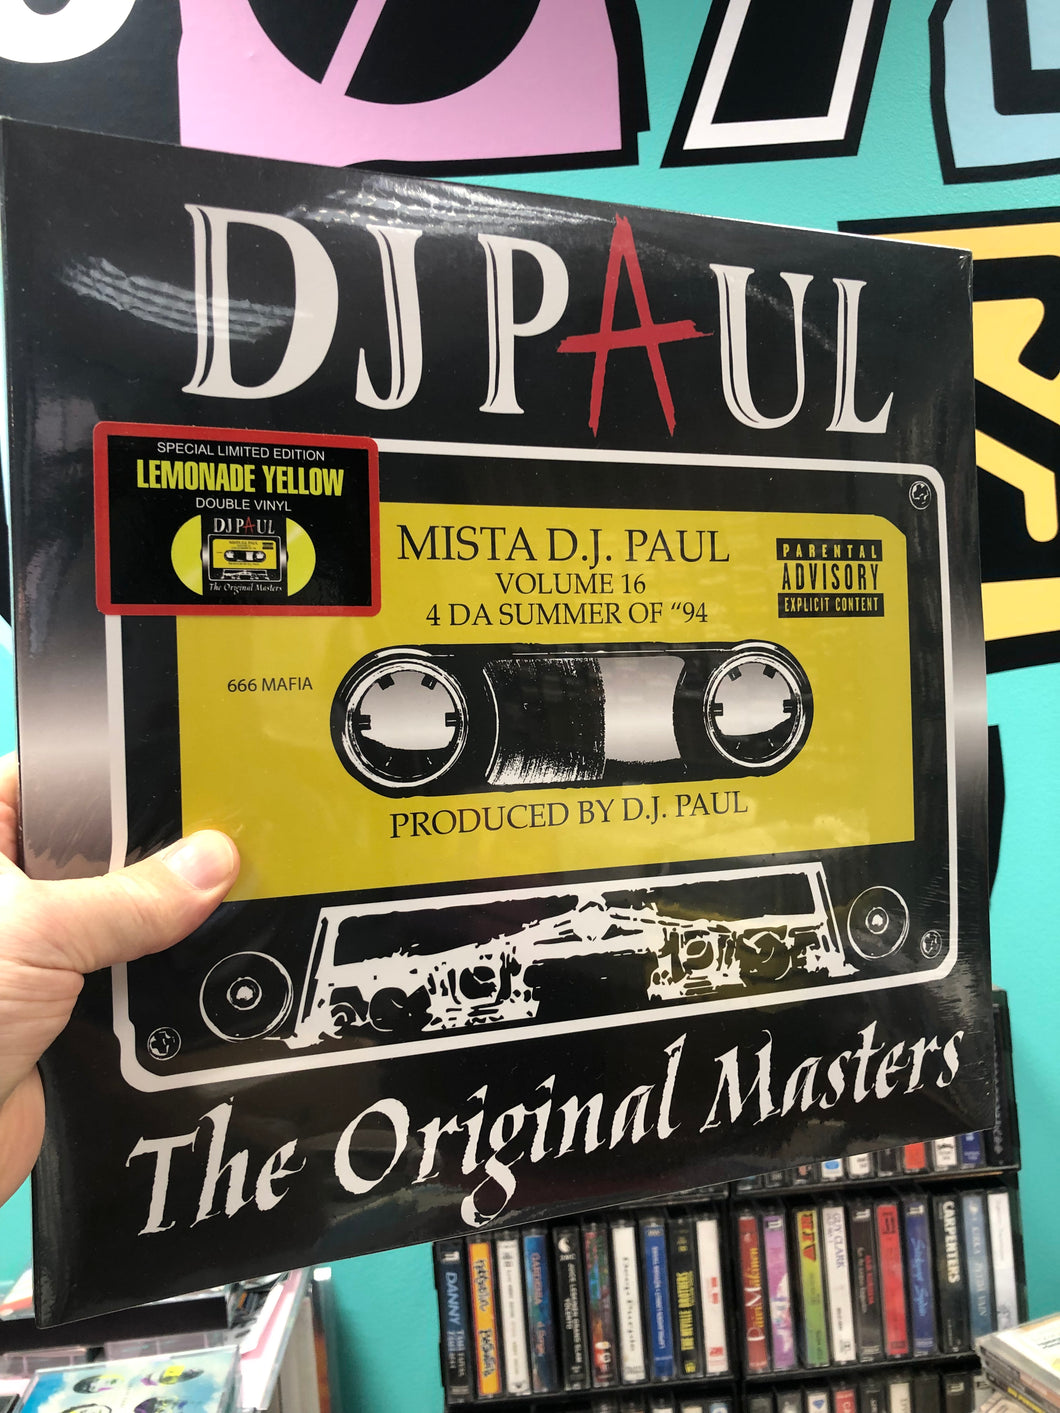 DJ Paul - Volume 16: 4 Da Summer of ”94 (The Original Masters), reissue, US 2023